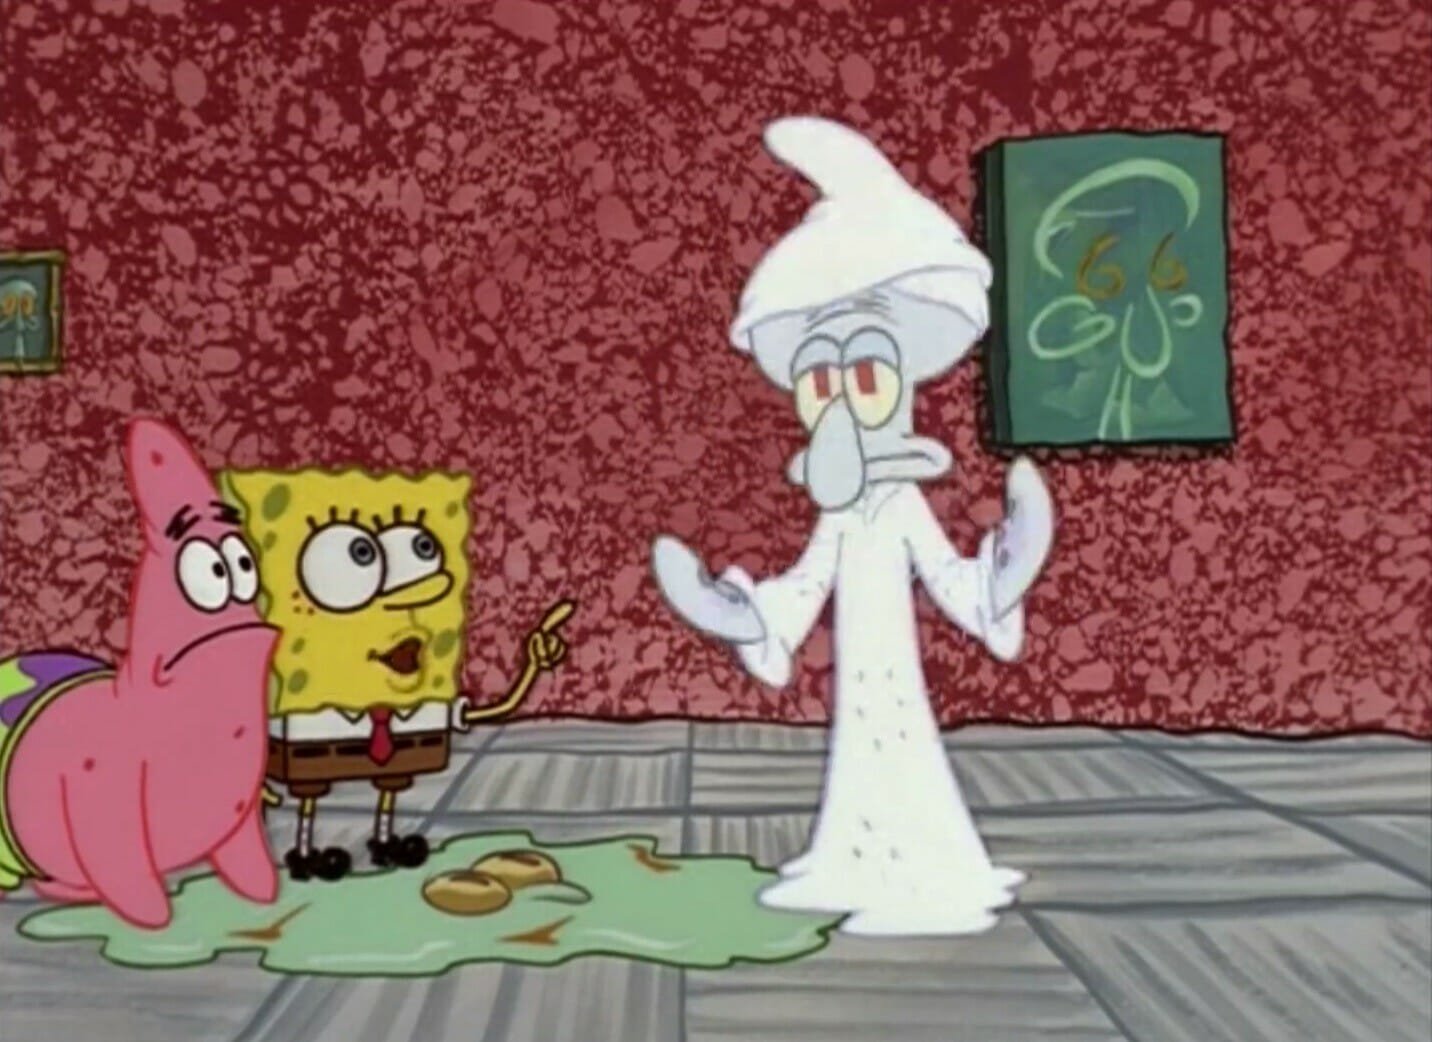 Best Spongebob episodes: Squidward the Unfriendly Ghost